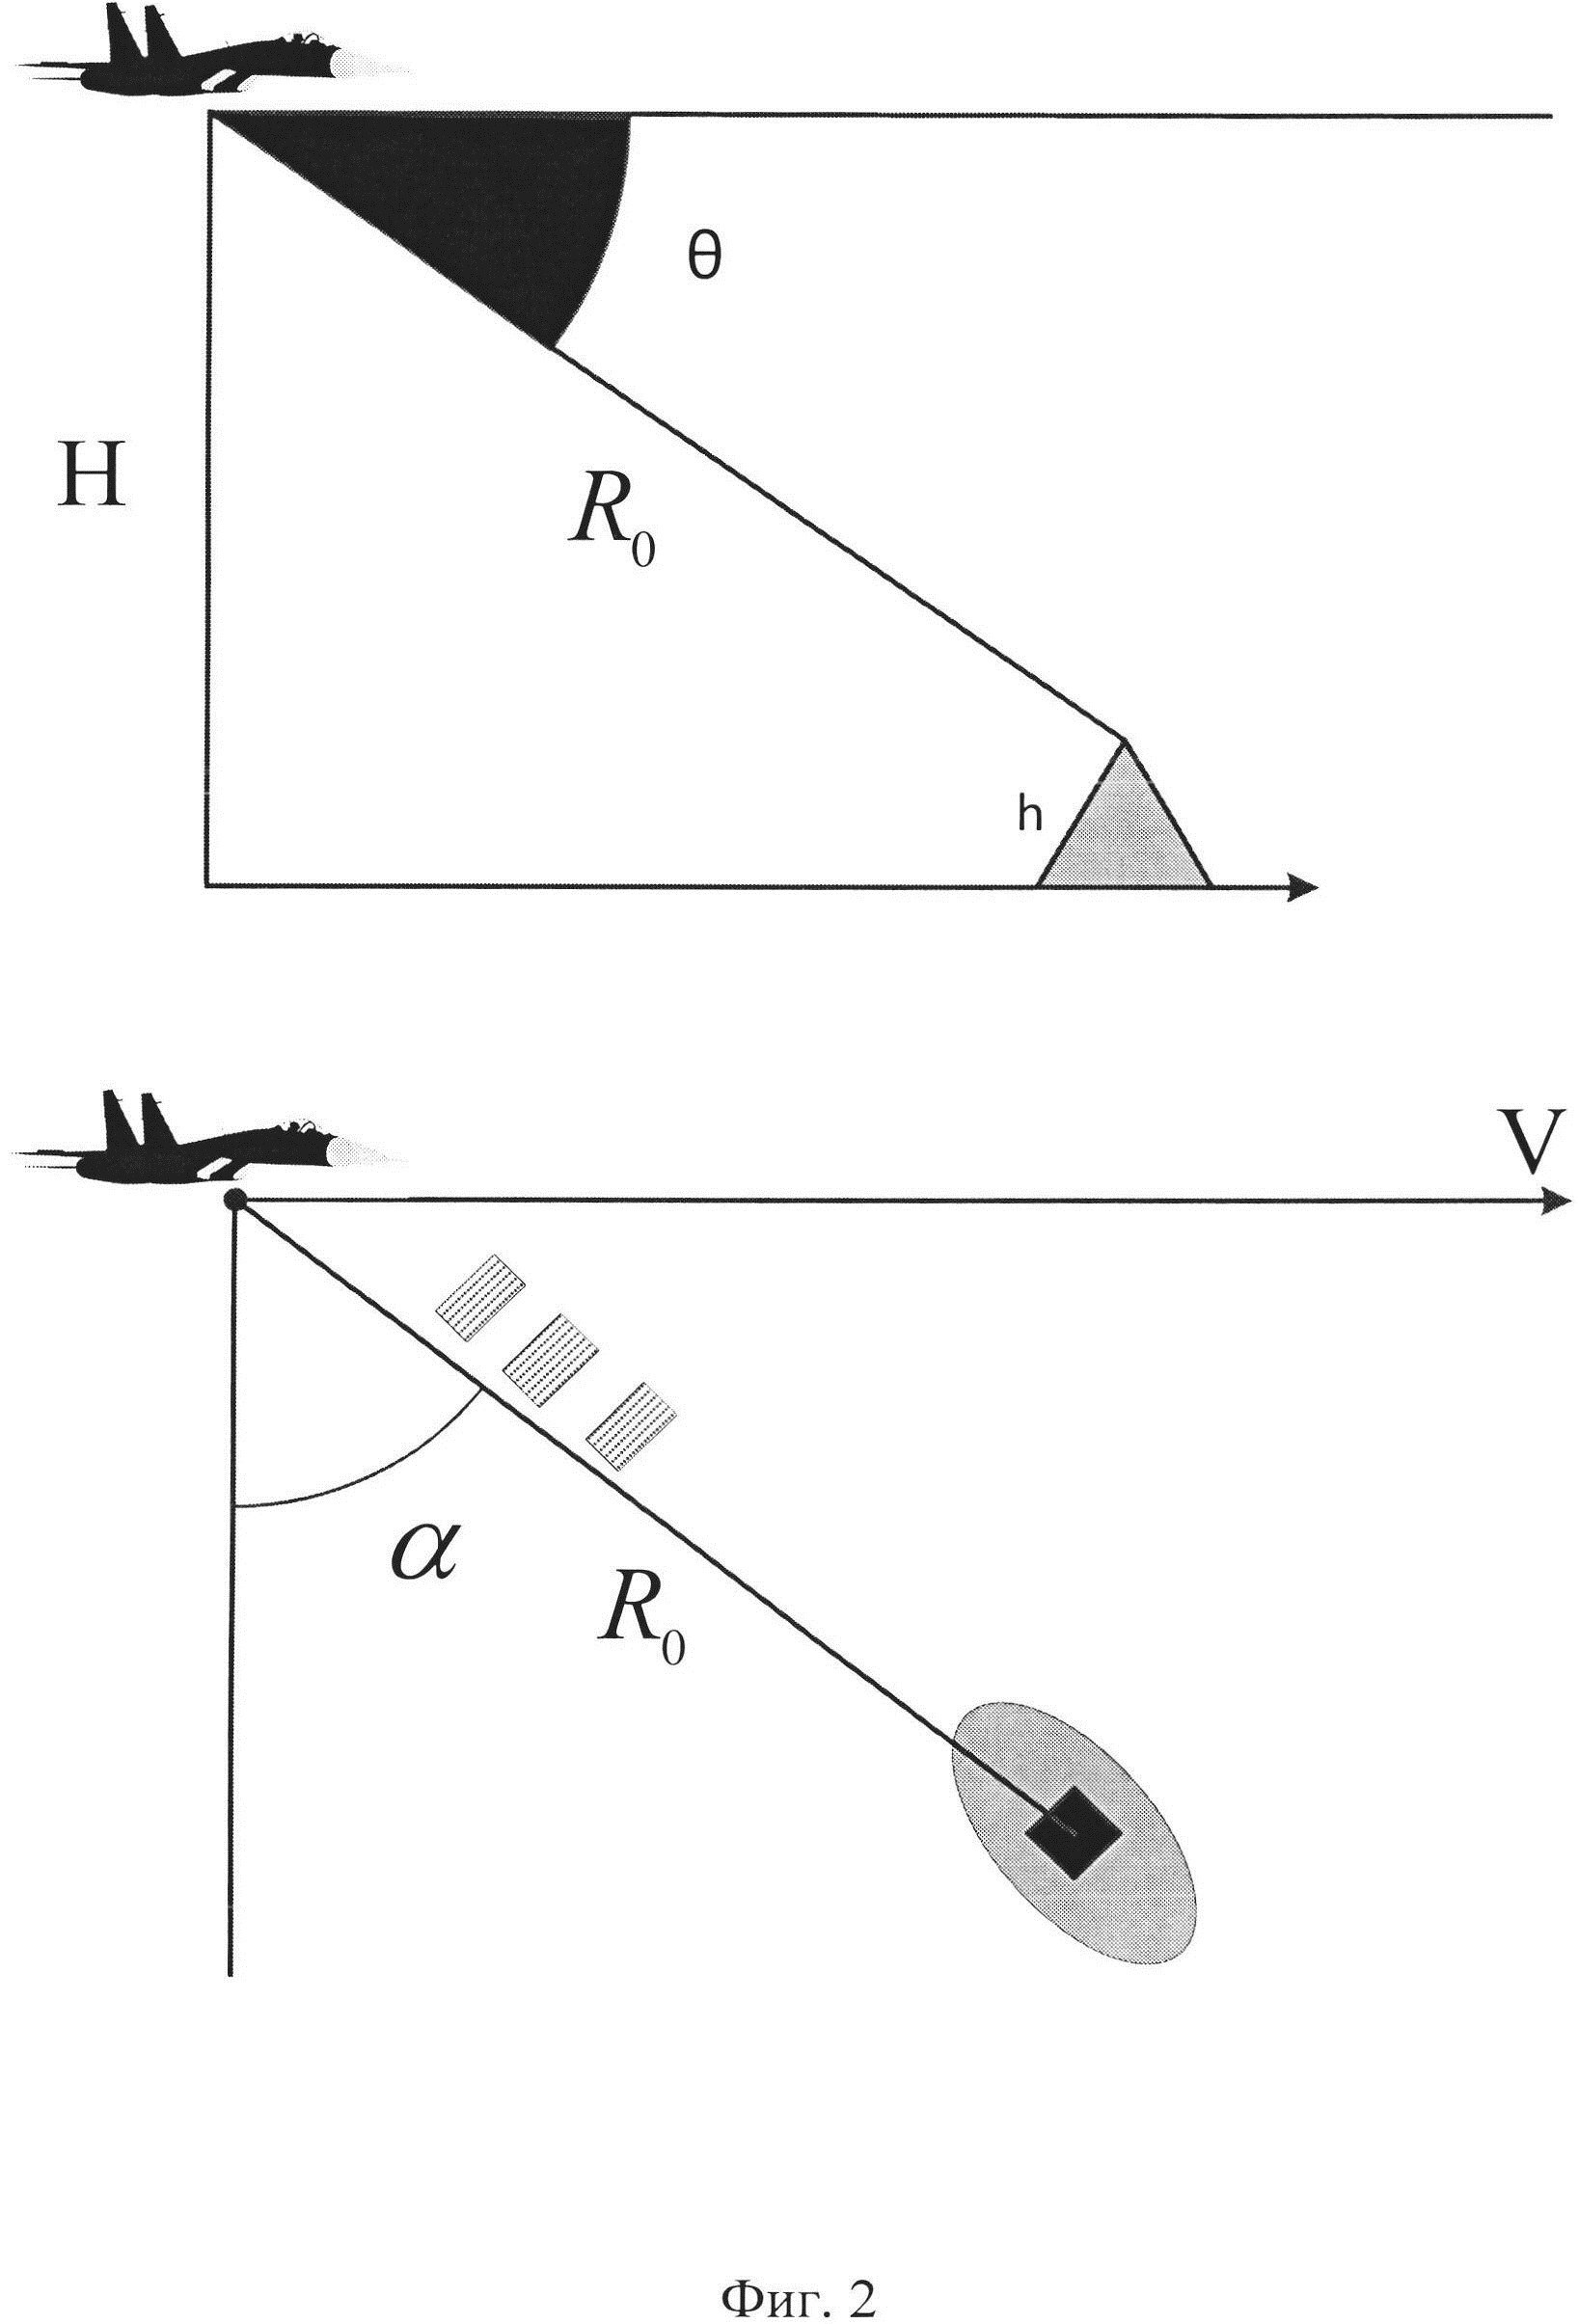 Способ определения высоты рельефа местности радиолокатором с синтезированной апертурой антенны